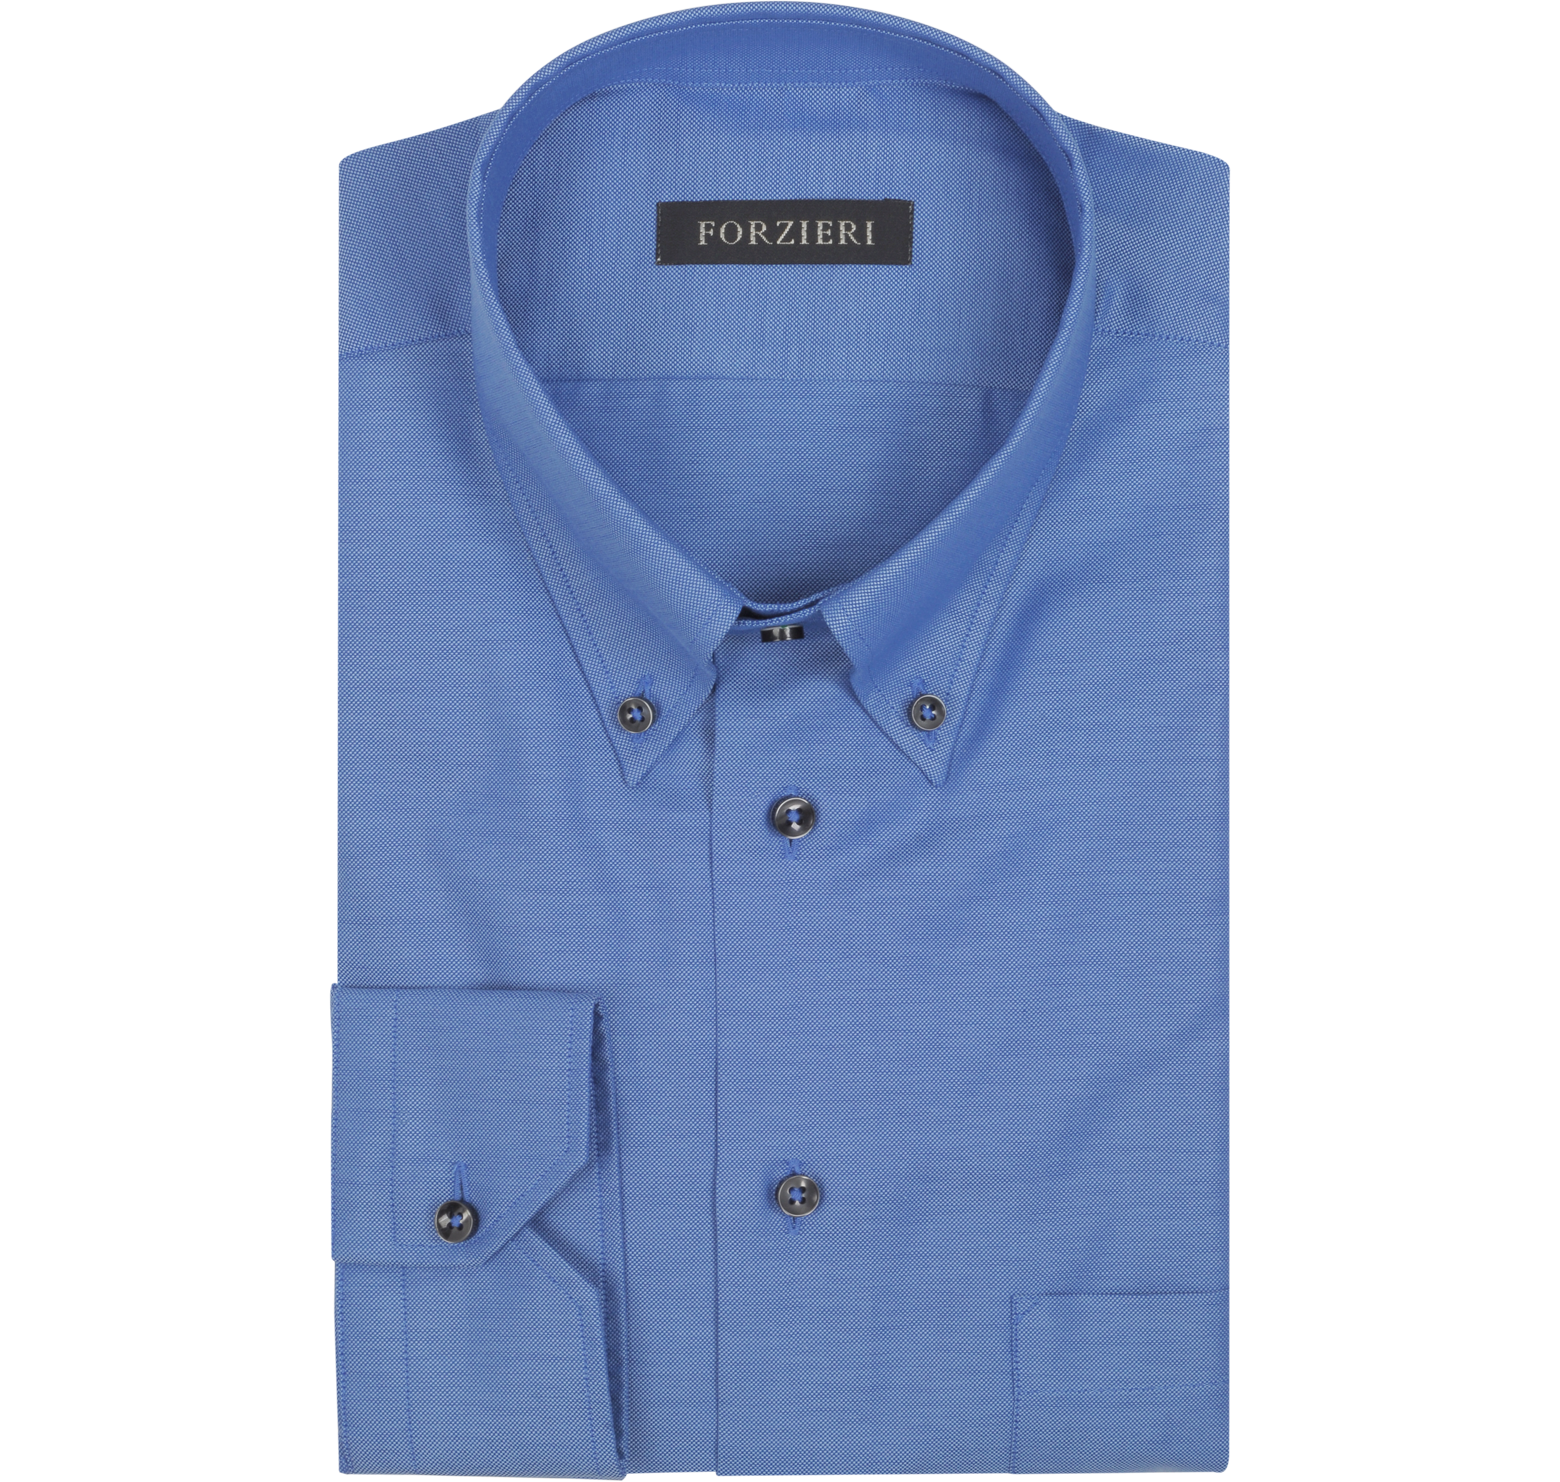 Forzieri Dark Blue Cotton Dress Shirt 16 36 at FORZIERI